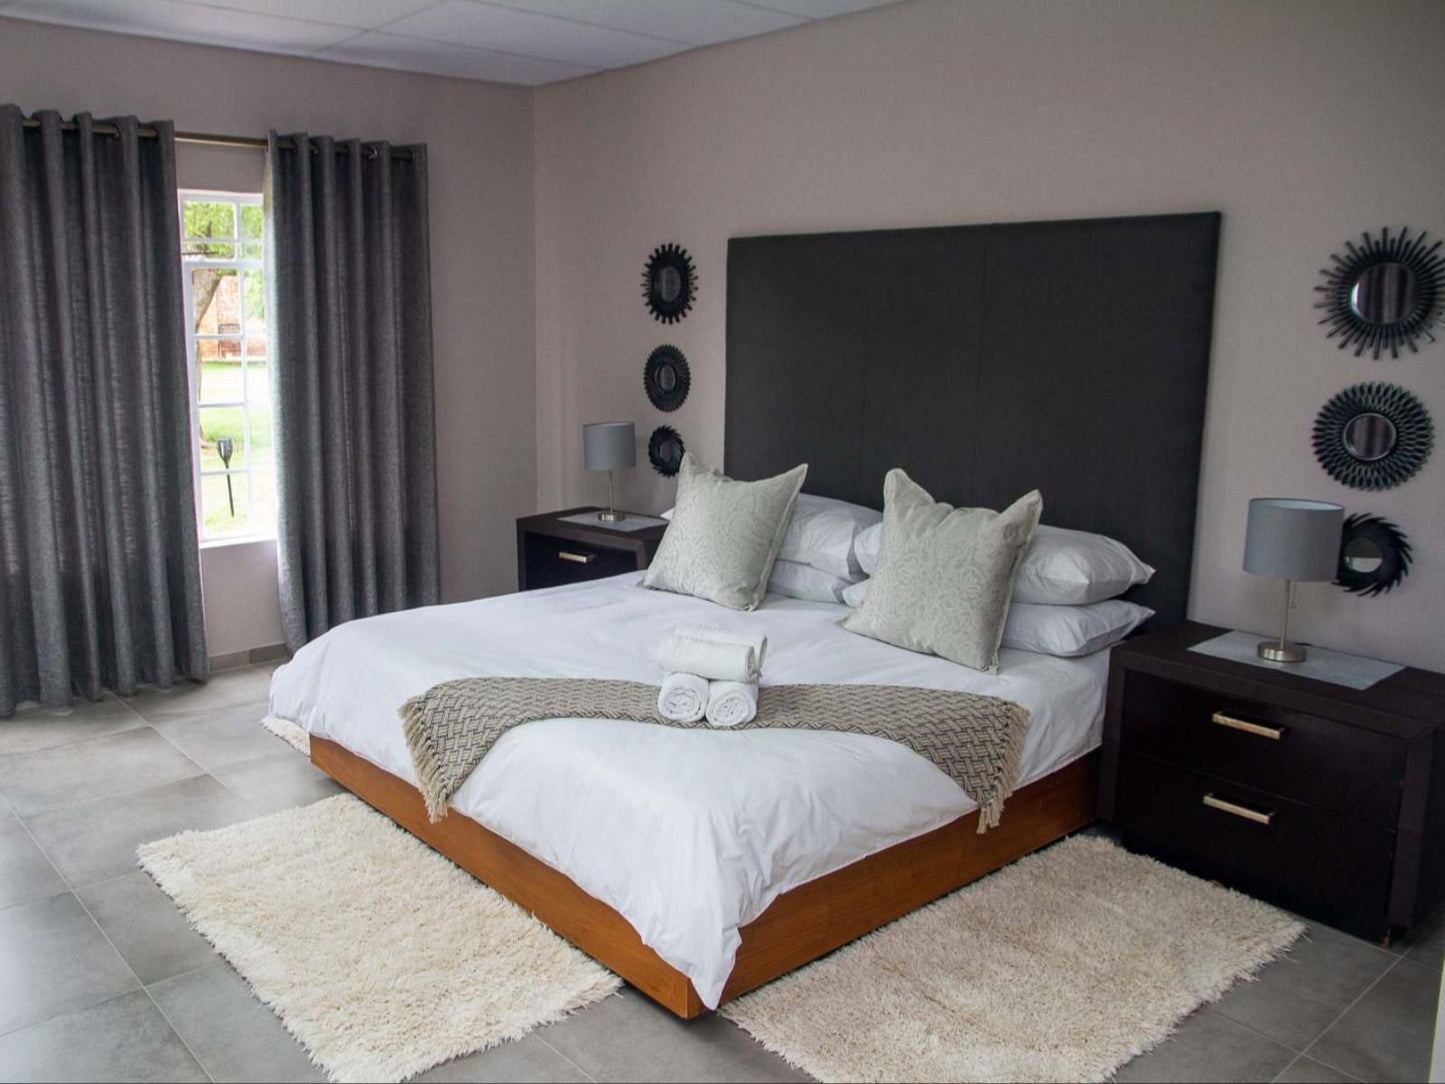 N Kosi Sana Game Lodge Kwamhlanga Mpumalanga South Africa Unsaturated, Bedroom